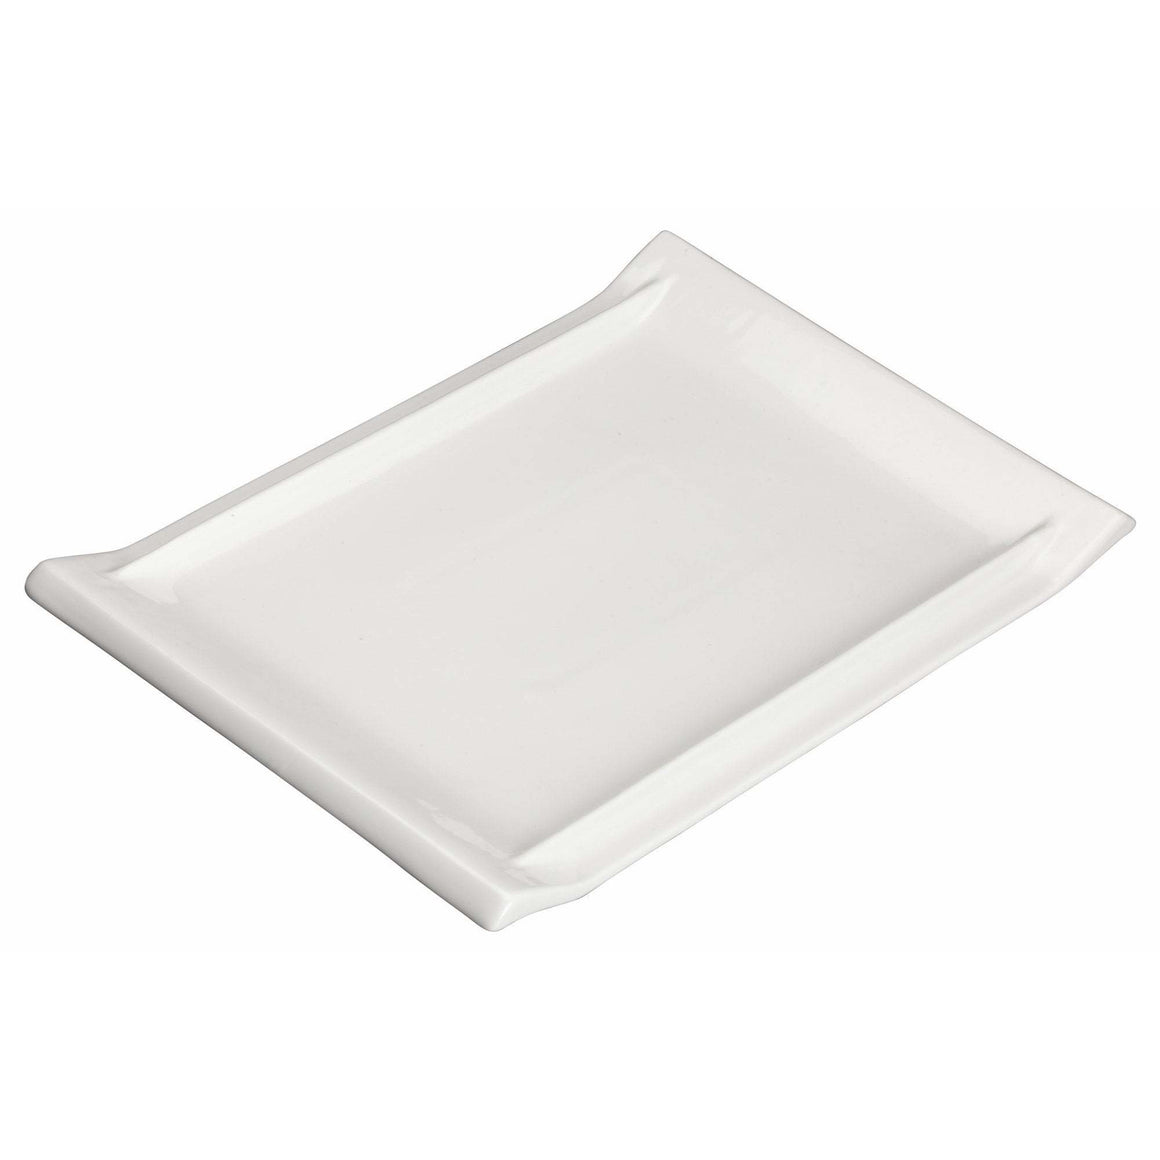 Winco - WDP017-112 - 11-7/8" x 8" Porcelain Rectangular Platter, Bright White, 12 pcs/case - Dinnerware - Maltese & Co New and Used  restaurant Equipment 